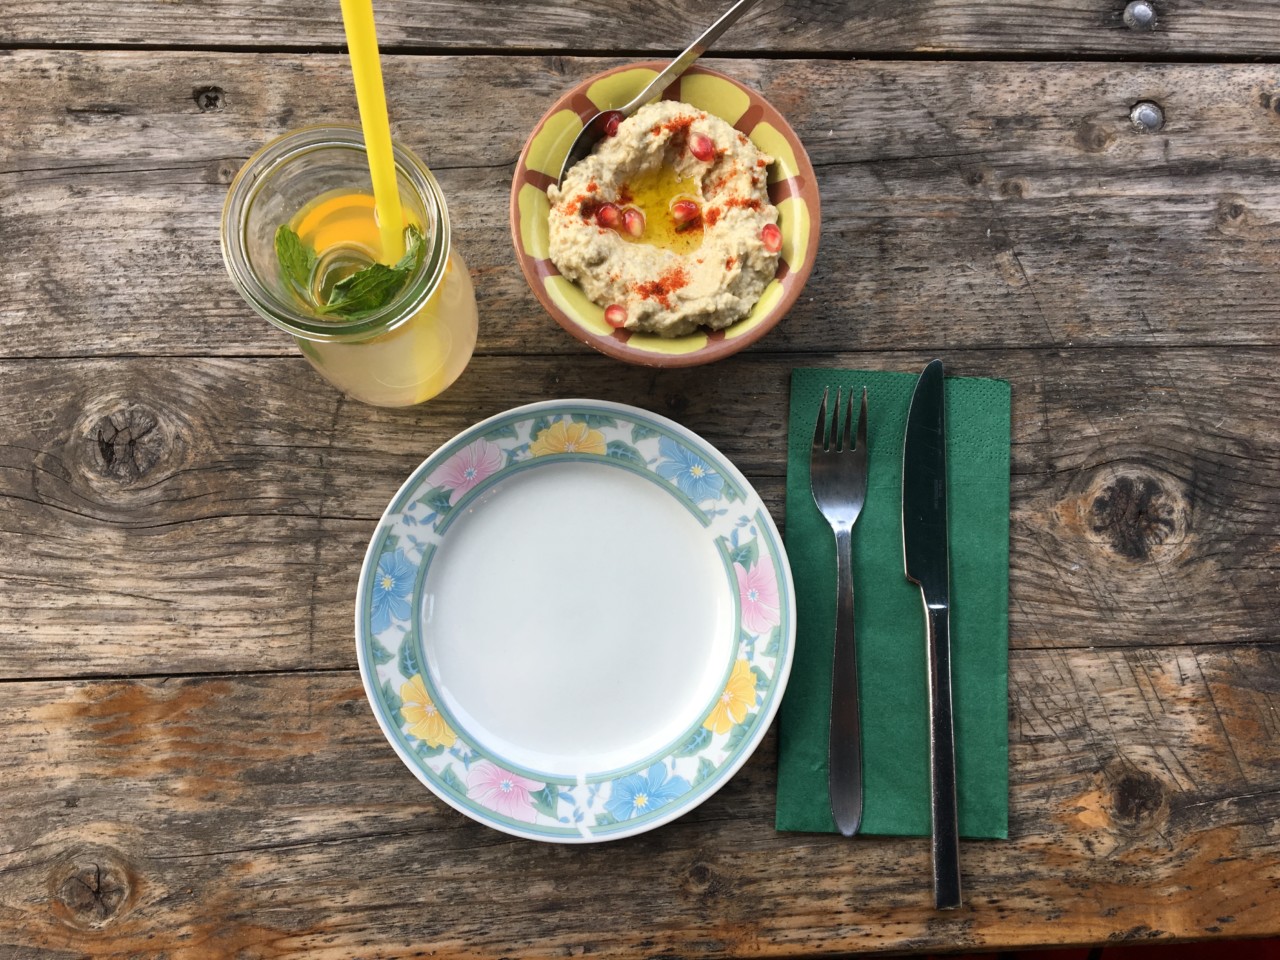 Hummus ist perfekt zum Teilen. Etwas anders siehts mit klassischen europäischen Gerichten aus. Foto: Lunchgate/Simone